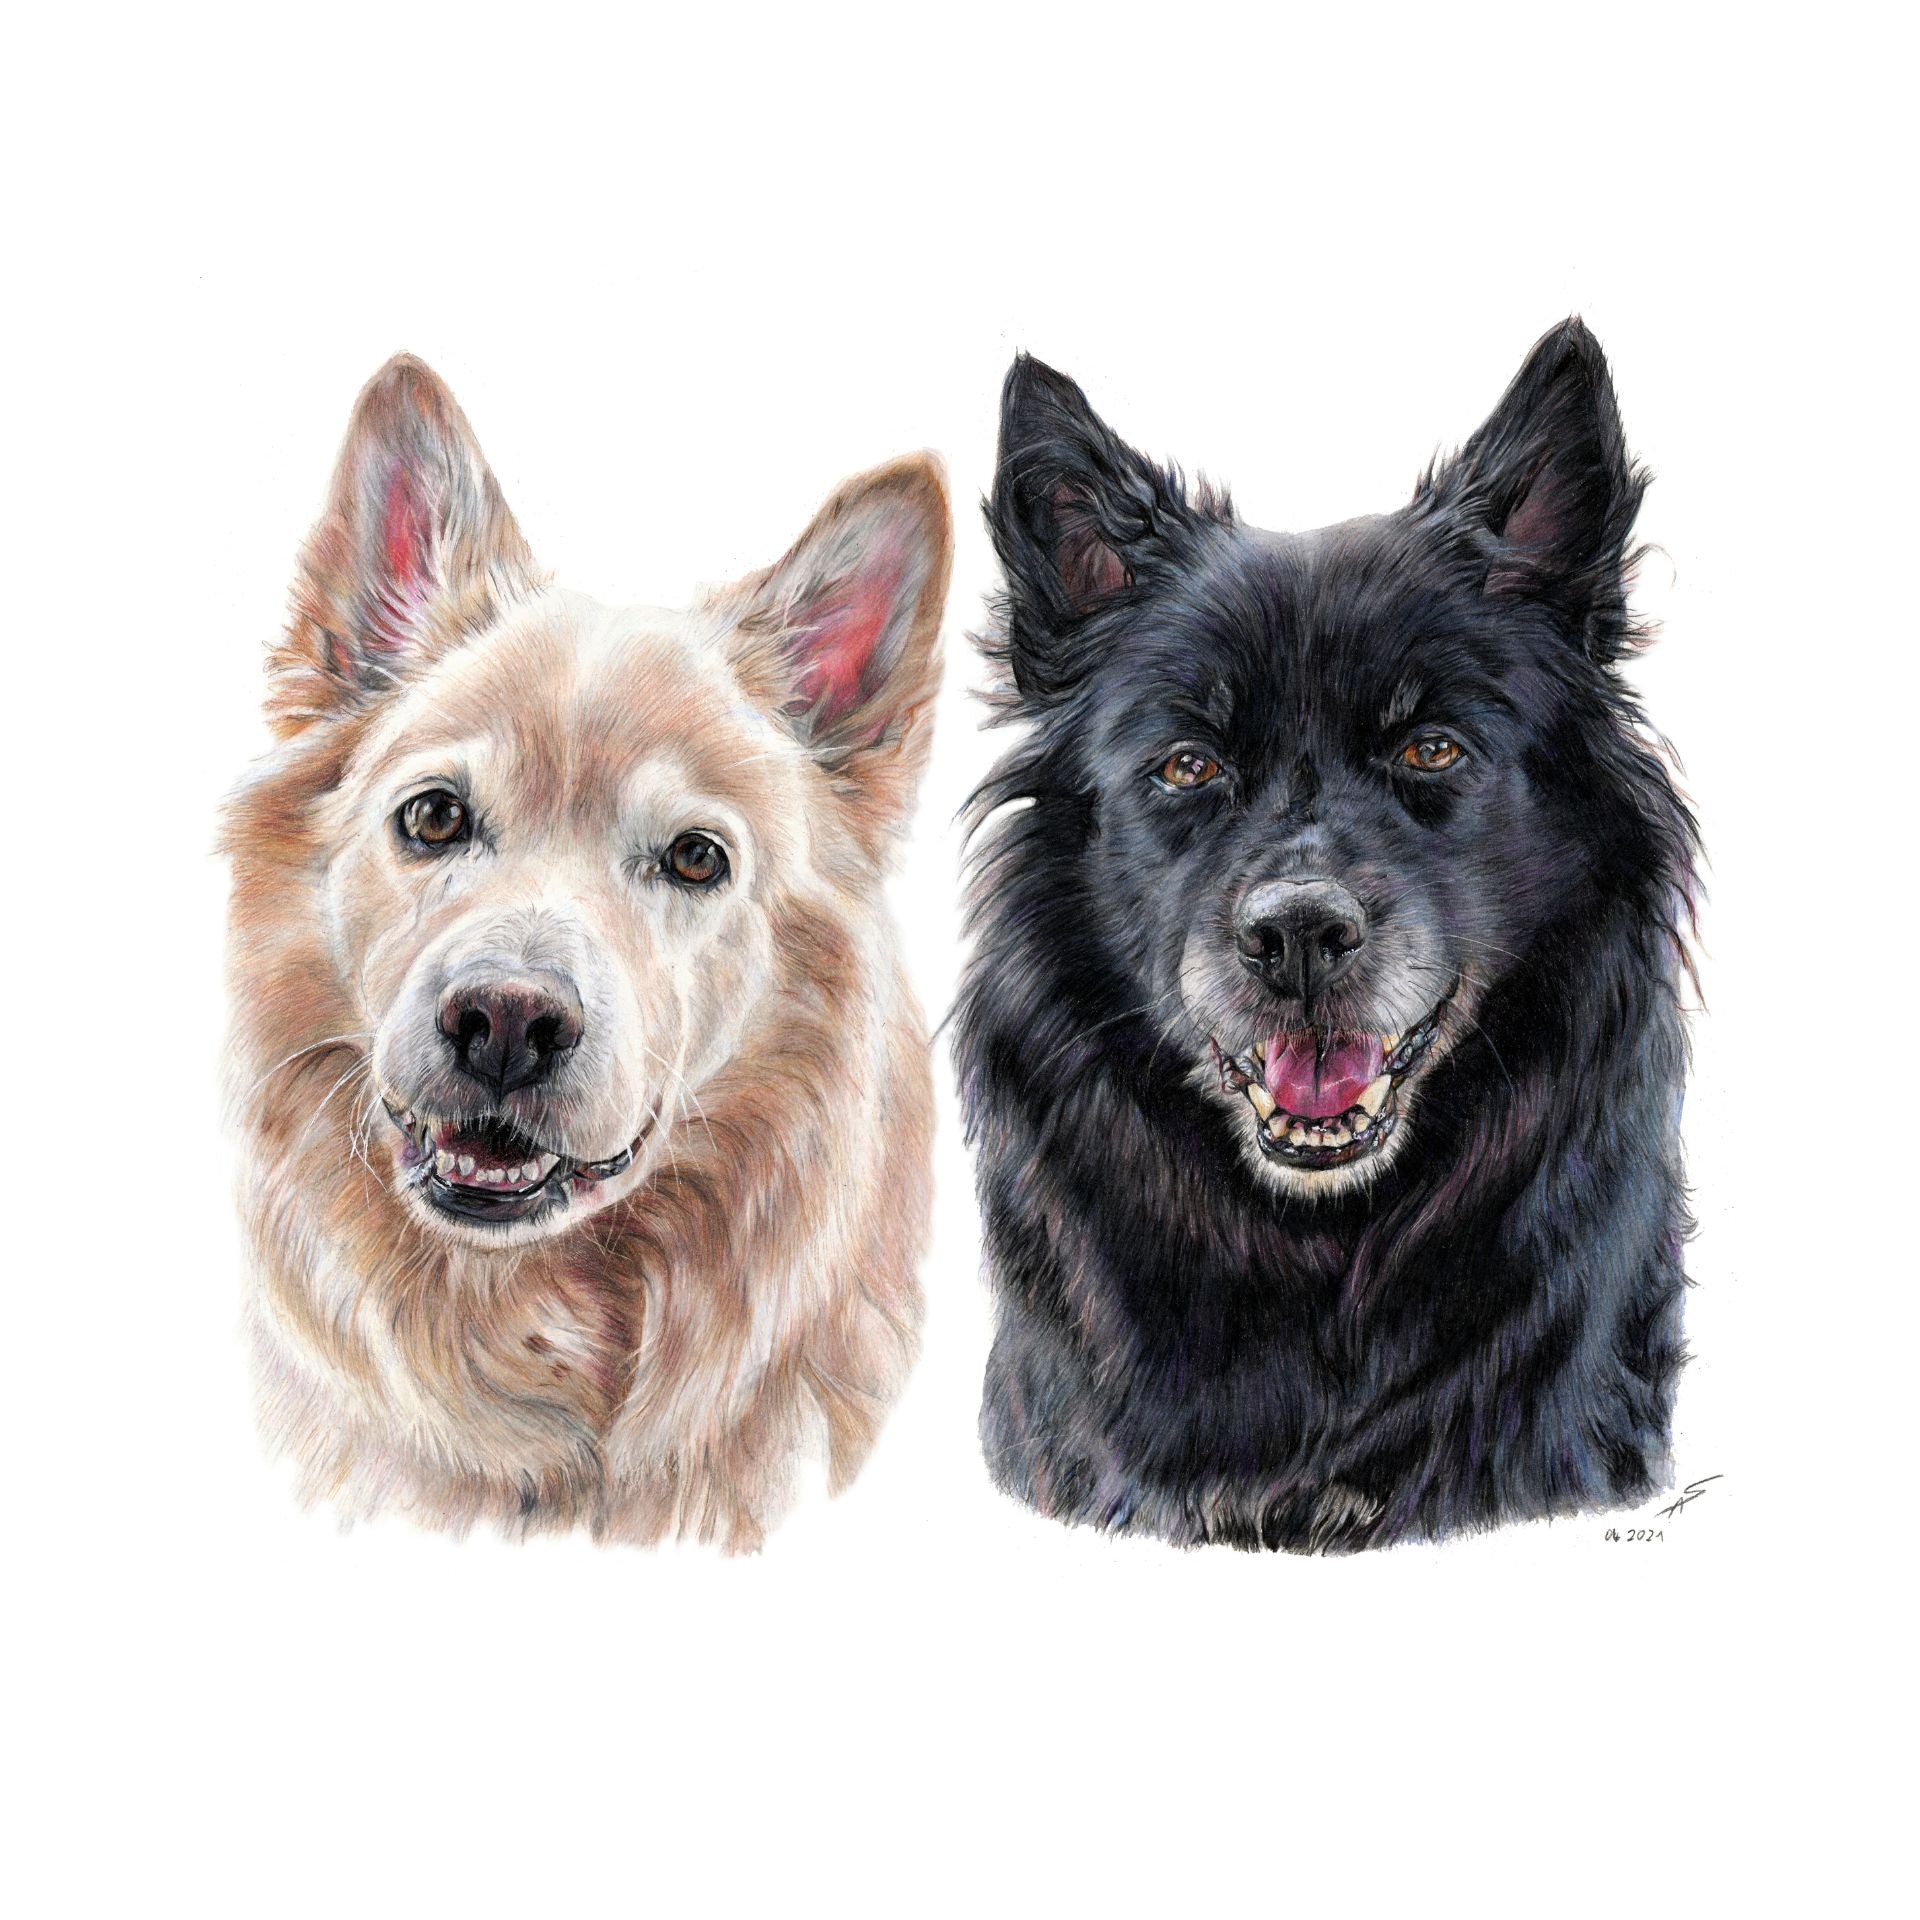 Buntstiftzeichnung von zwei Hunden, beige und schwarz